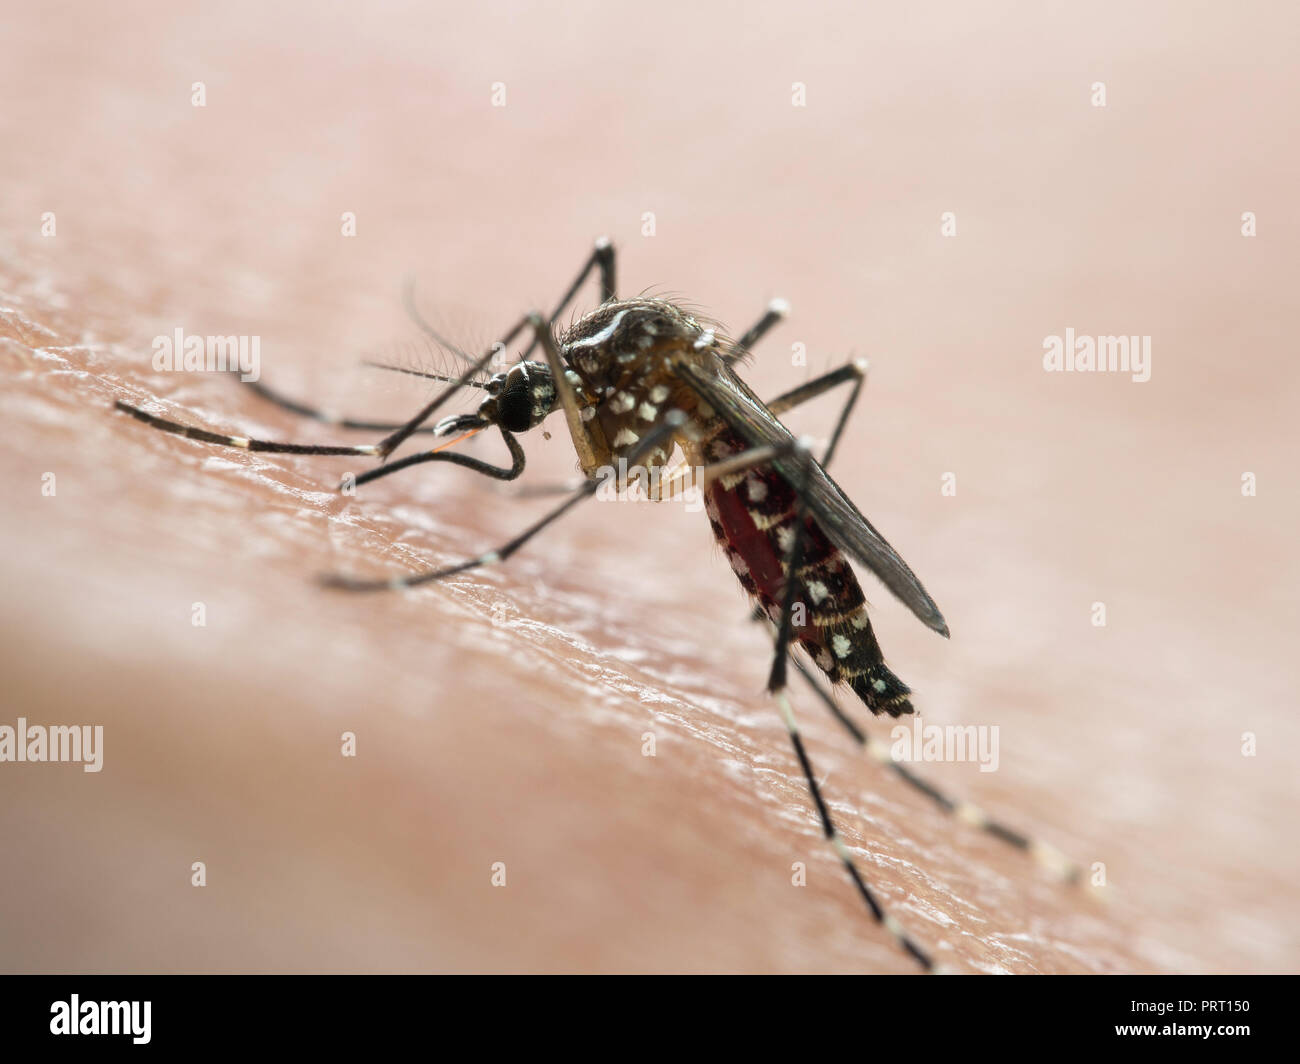 Mosquito Aedes aegypti (mosquito da dengue) a chupar la sangre en la piel humana. Vector de la fiebre del dengue, la fiebre amarilla y el Chikungunya virus zika. Foto de stock